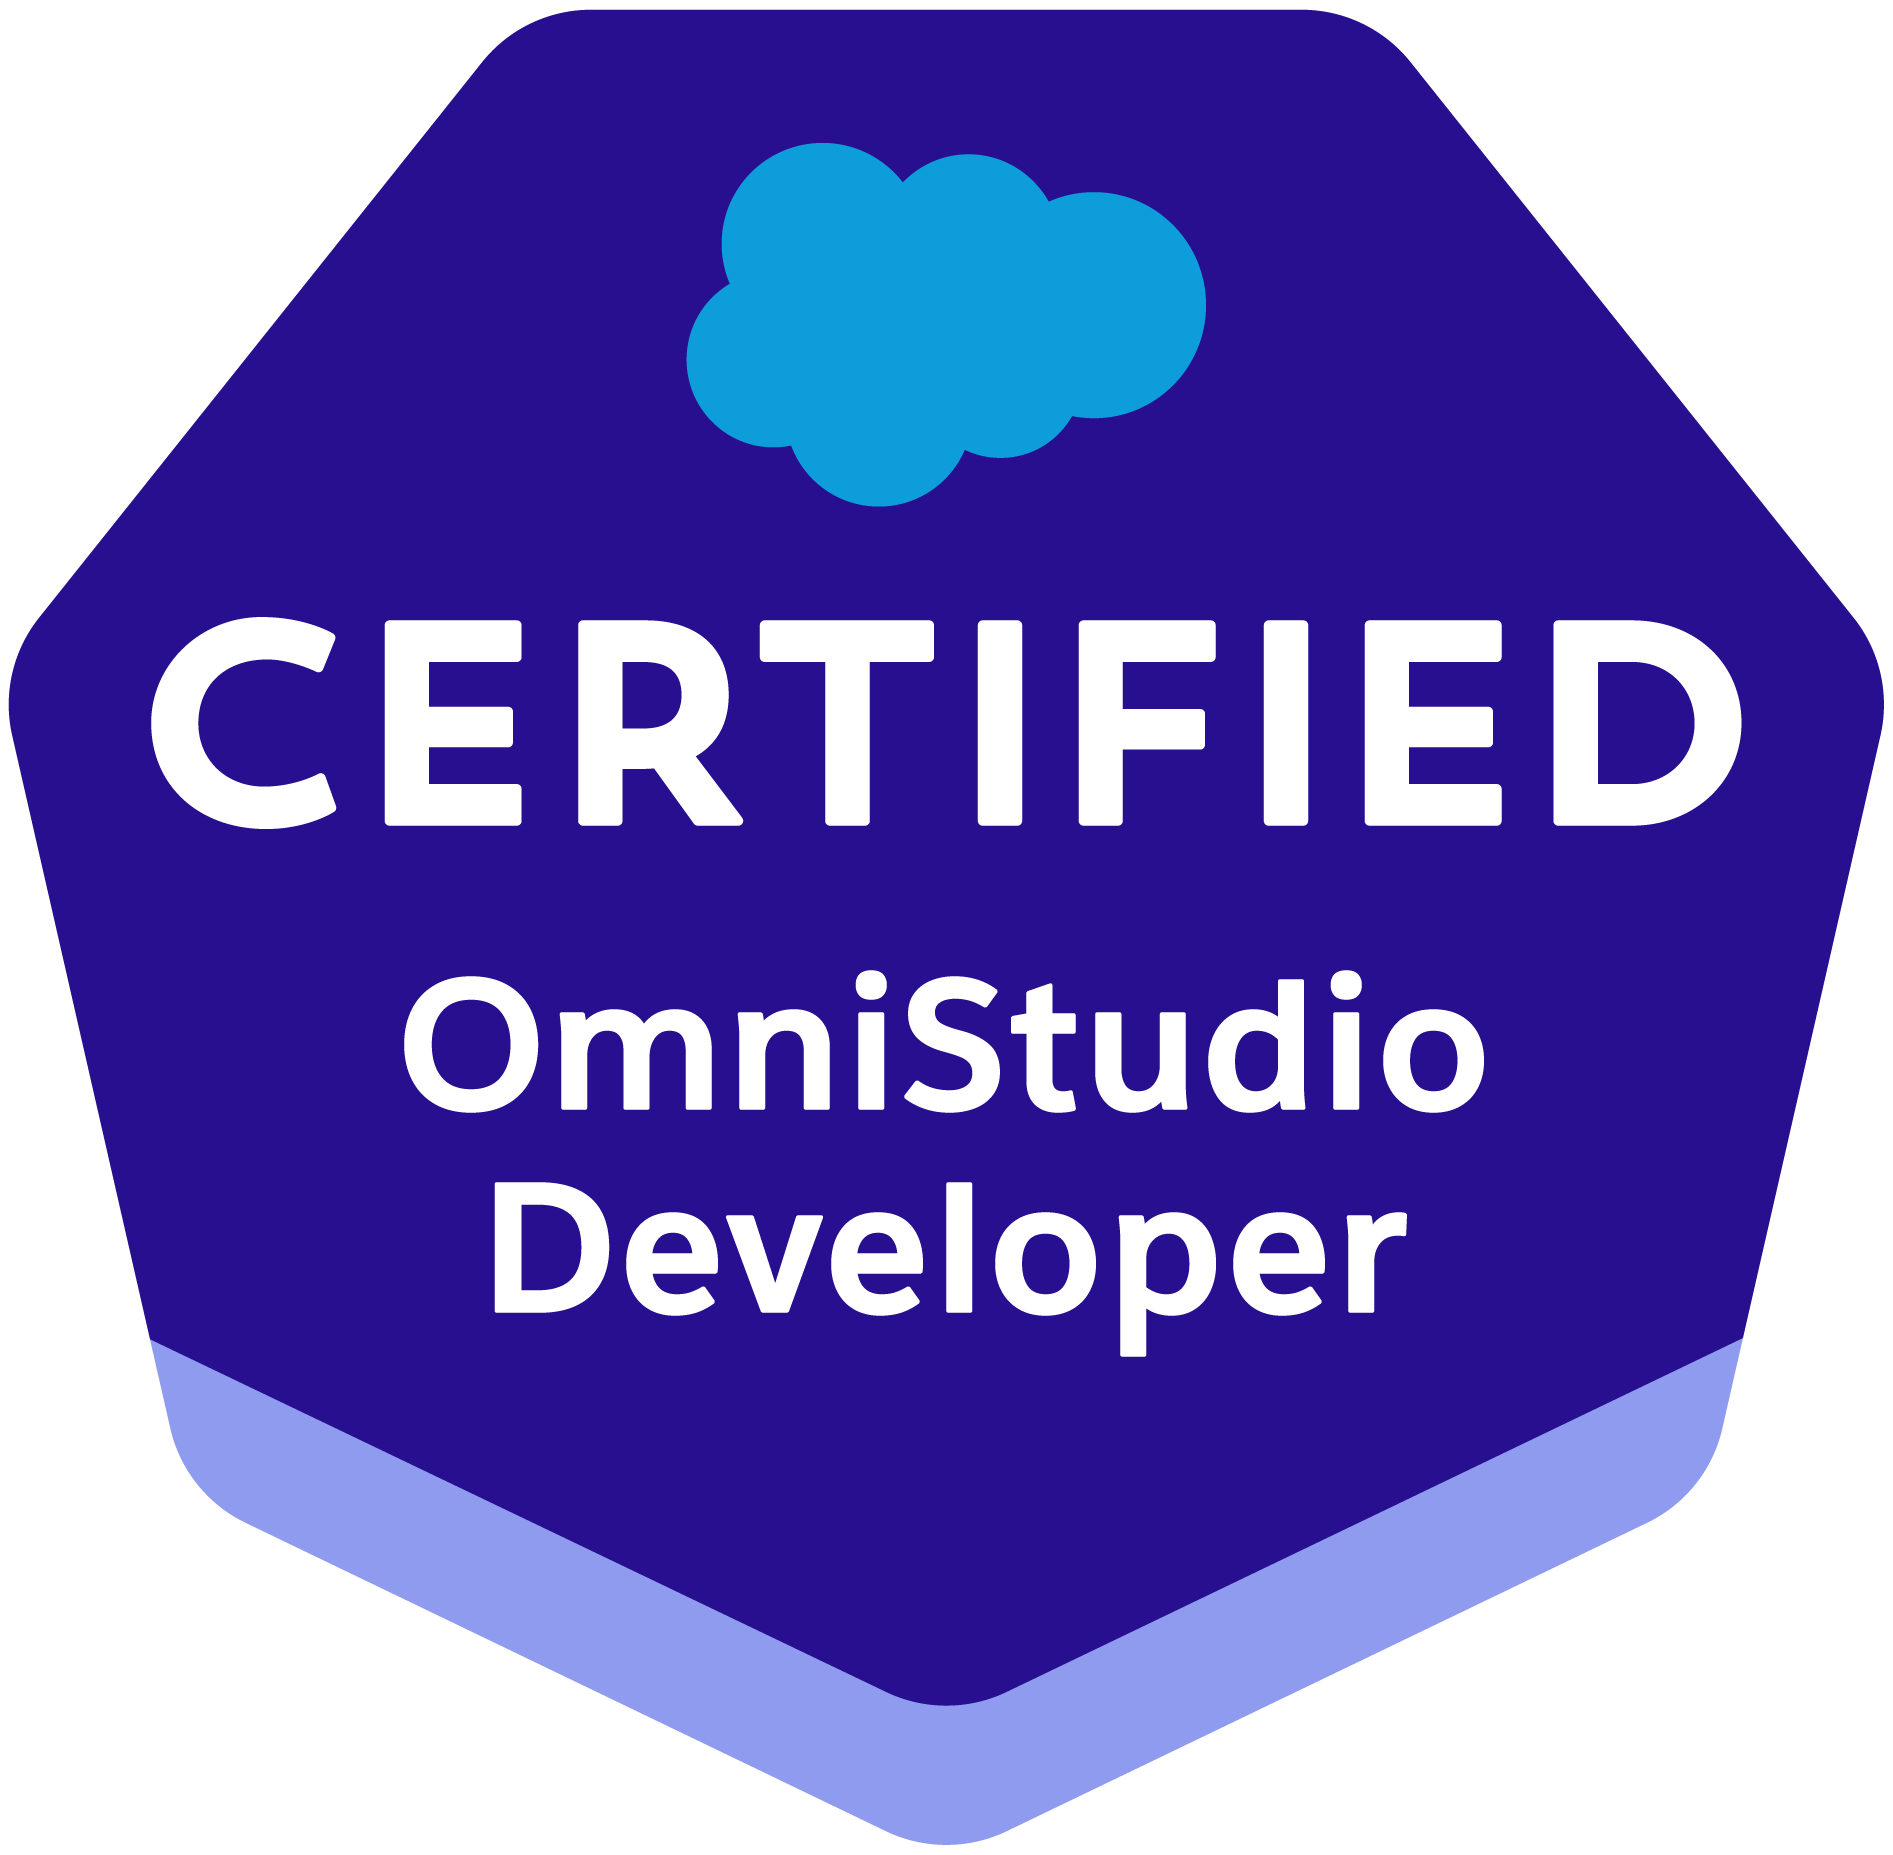 OmniStudio Dev Certification